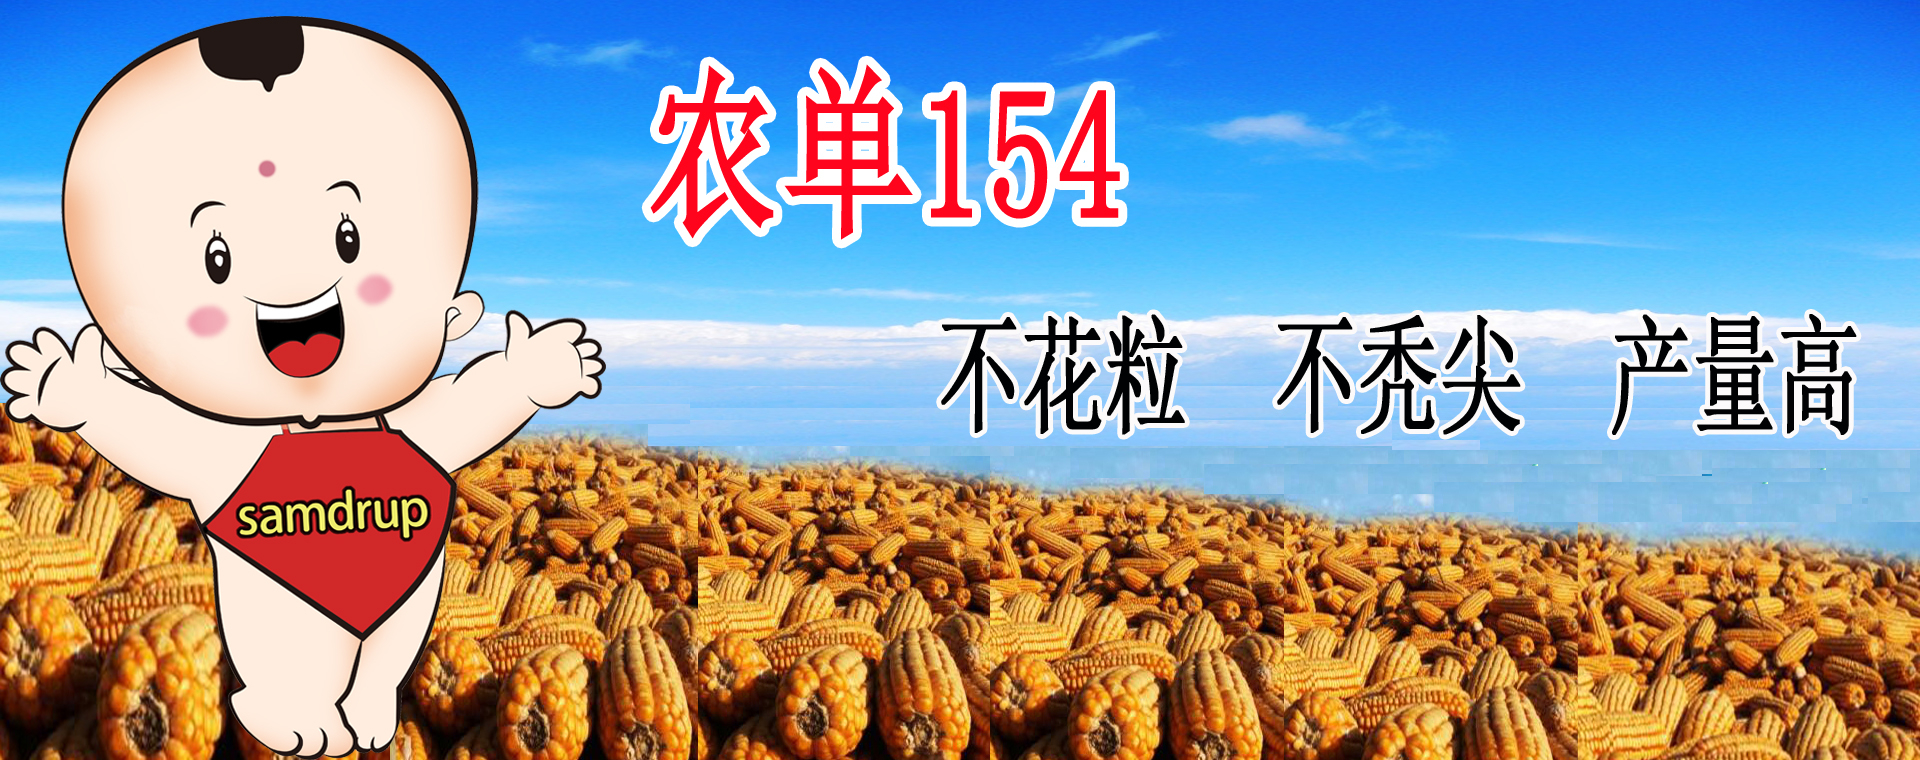 日本巨型杏鲍菇创世界纪录 长达59厘米重超7斤(图)